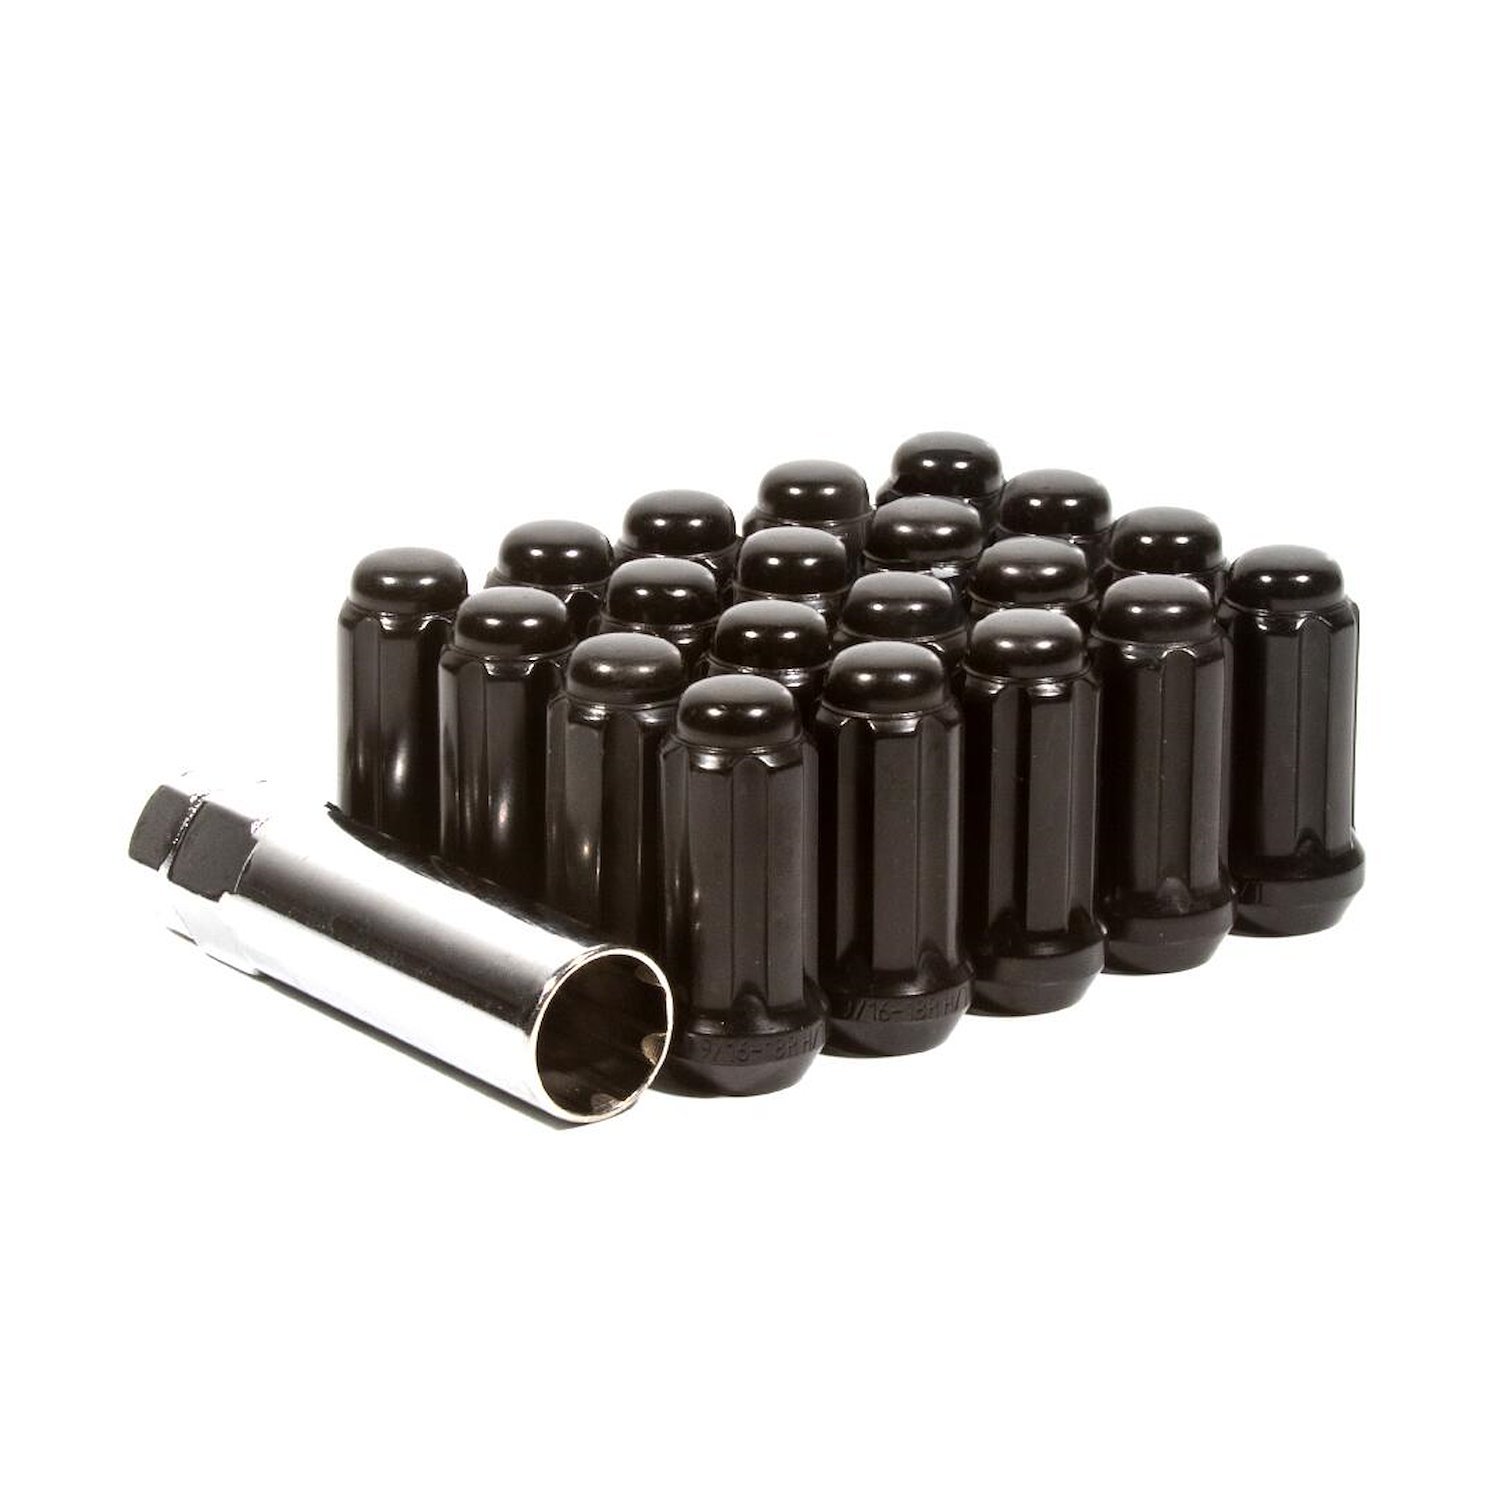 LK-W55014SEB Lug Kit, Extended Thread Spline, M14X1.5, 5 Lug Kit, Black, 20 Nuts